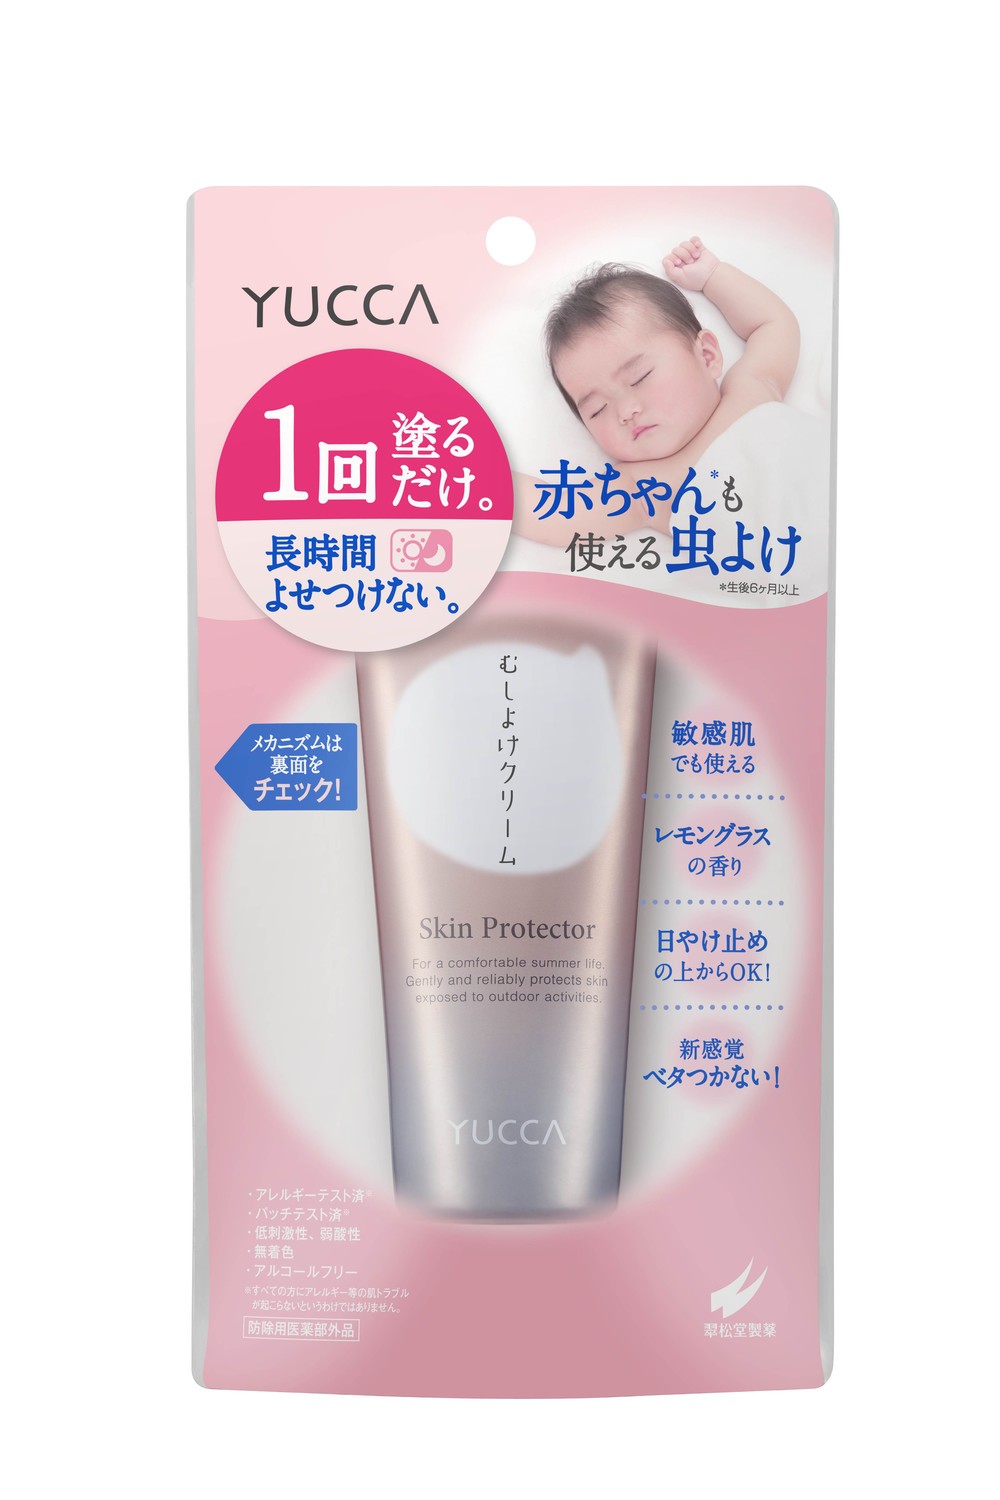 一度塗るだけで効果が長時間持続　YUCCAから赤ちゃんも使える「むしよけクリーム」発売